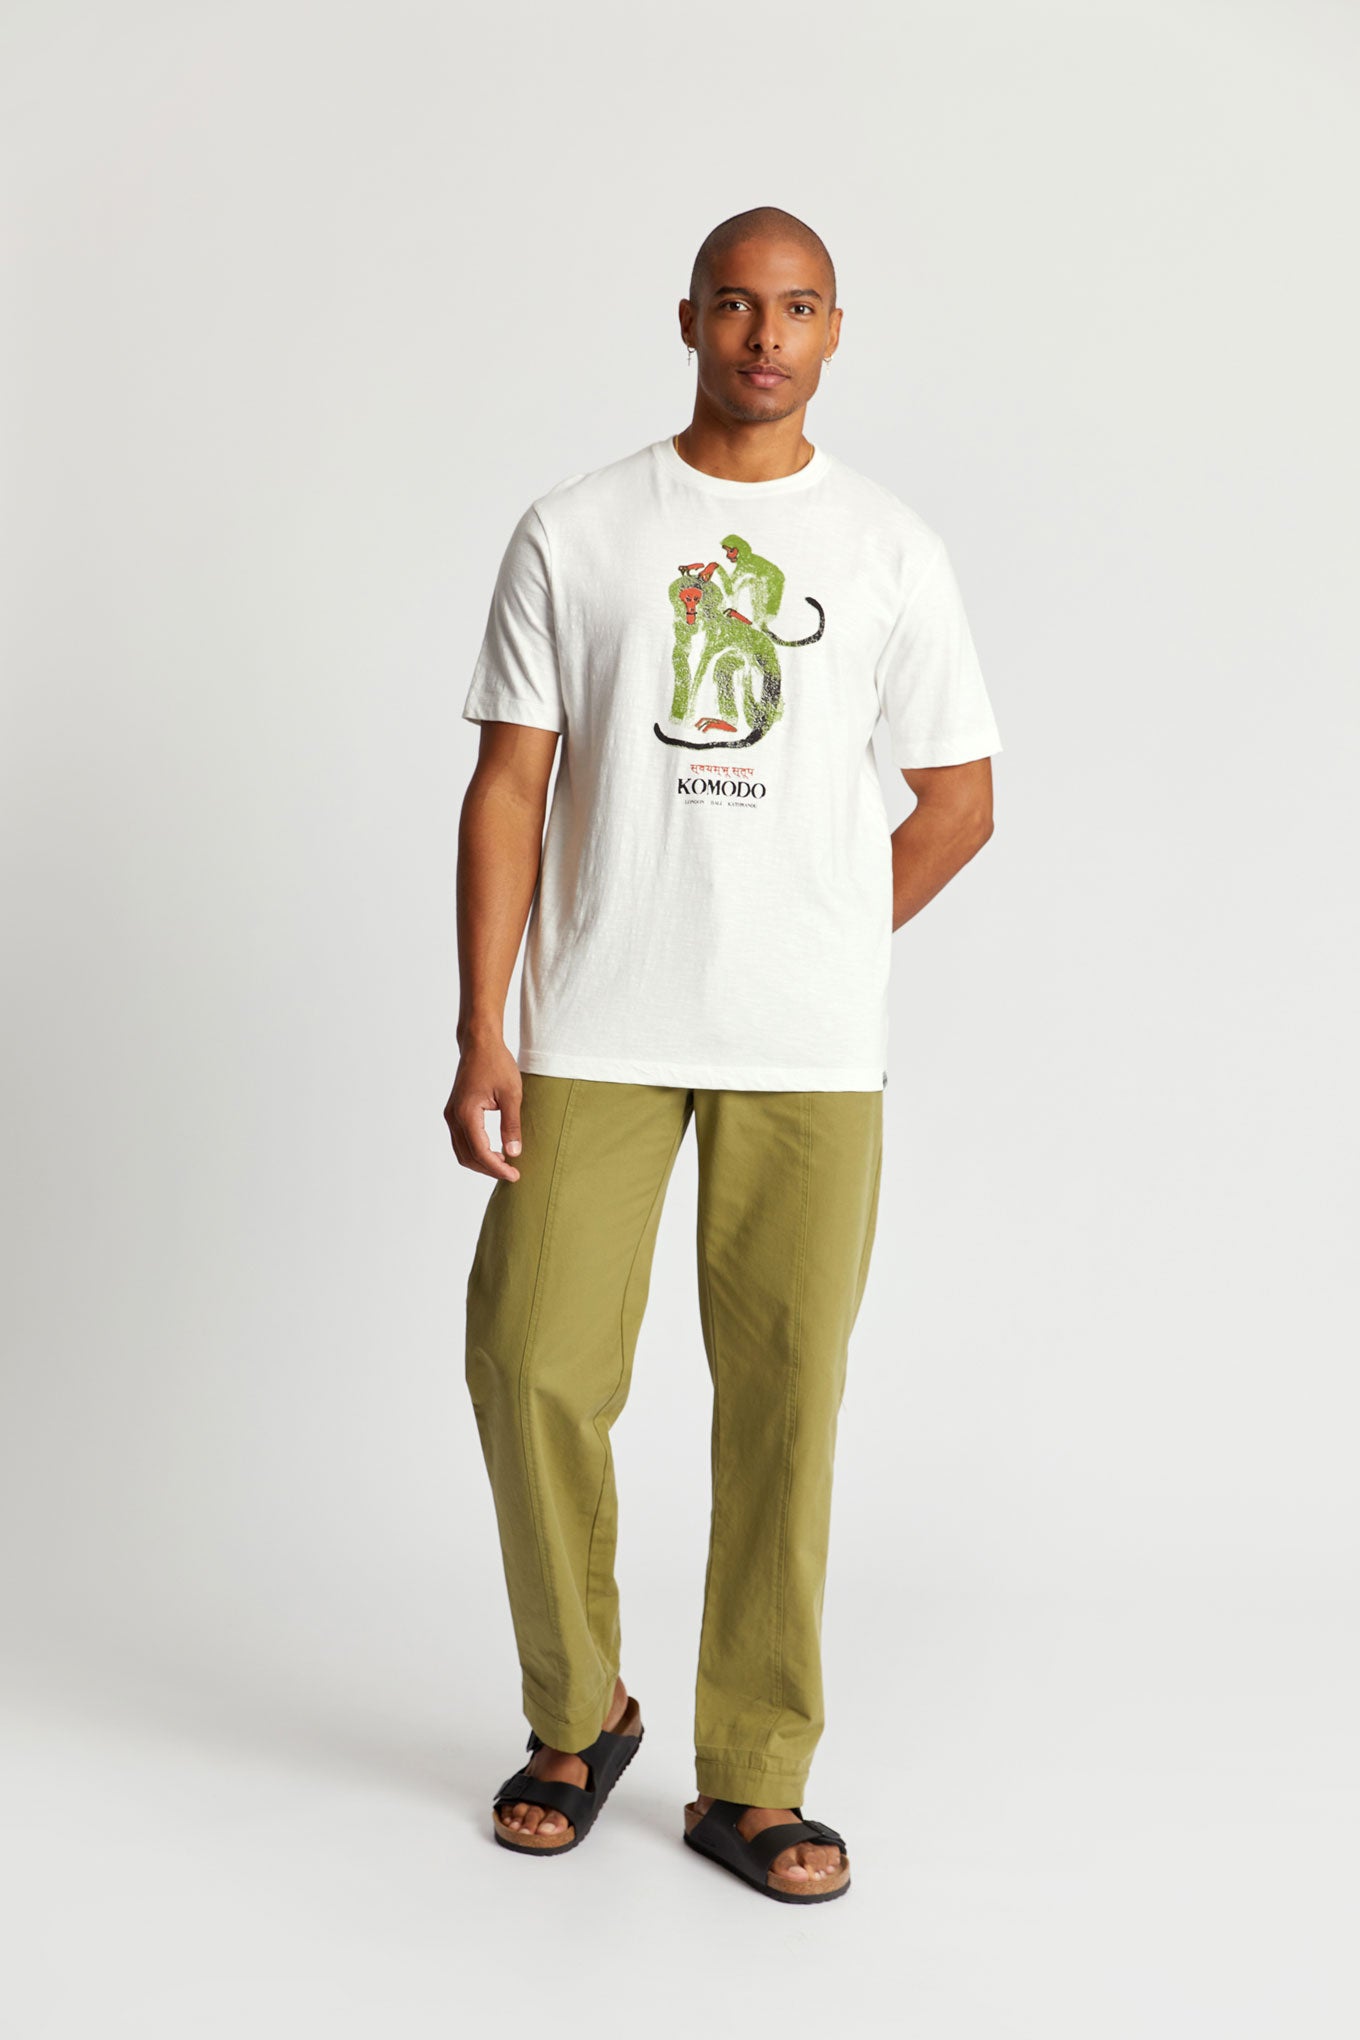 Weisses T-Shirt MONKEYS aus Bio-Baumwolle von Komodo